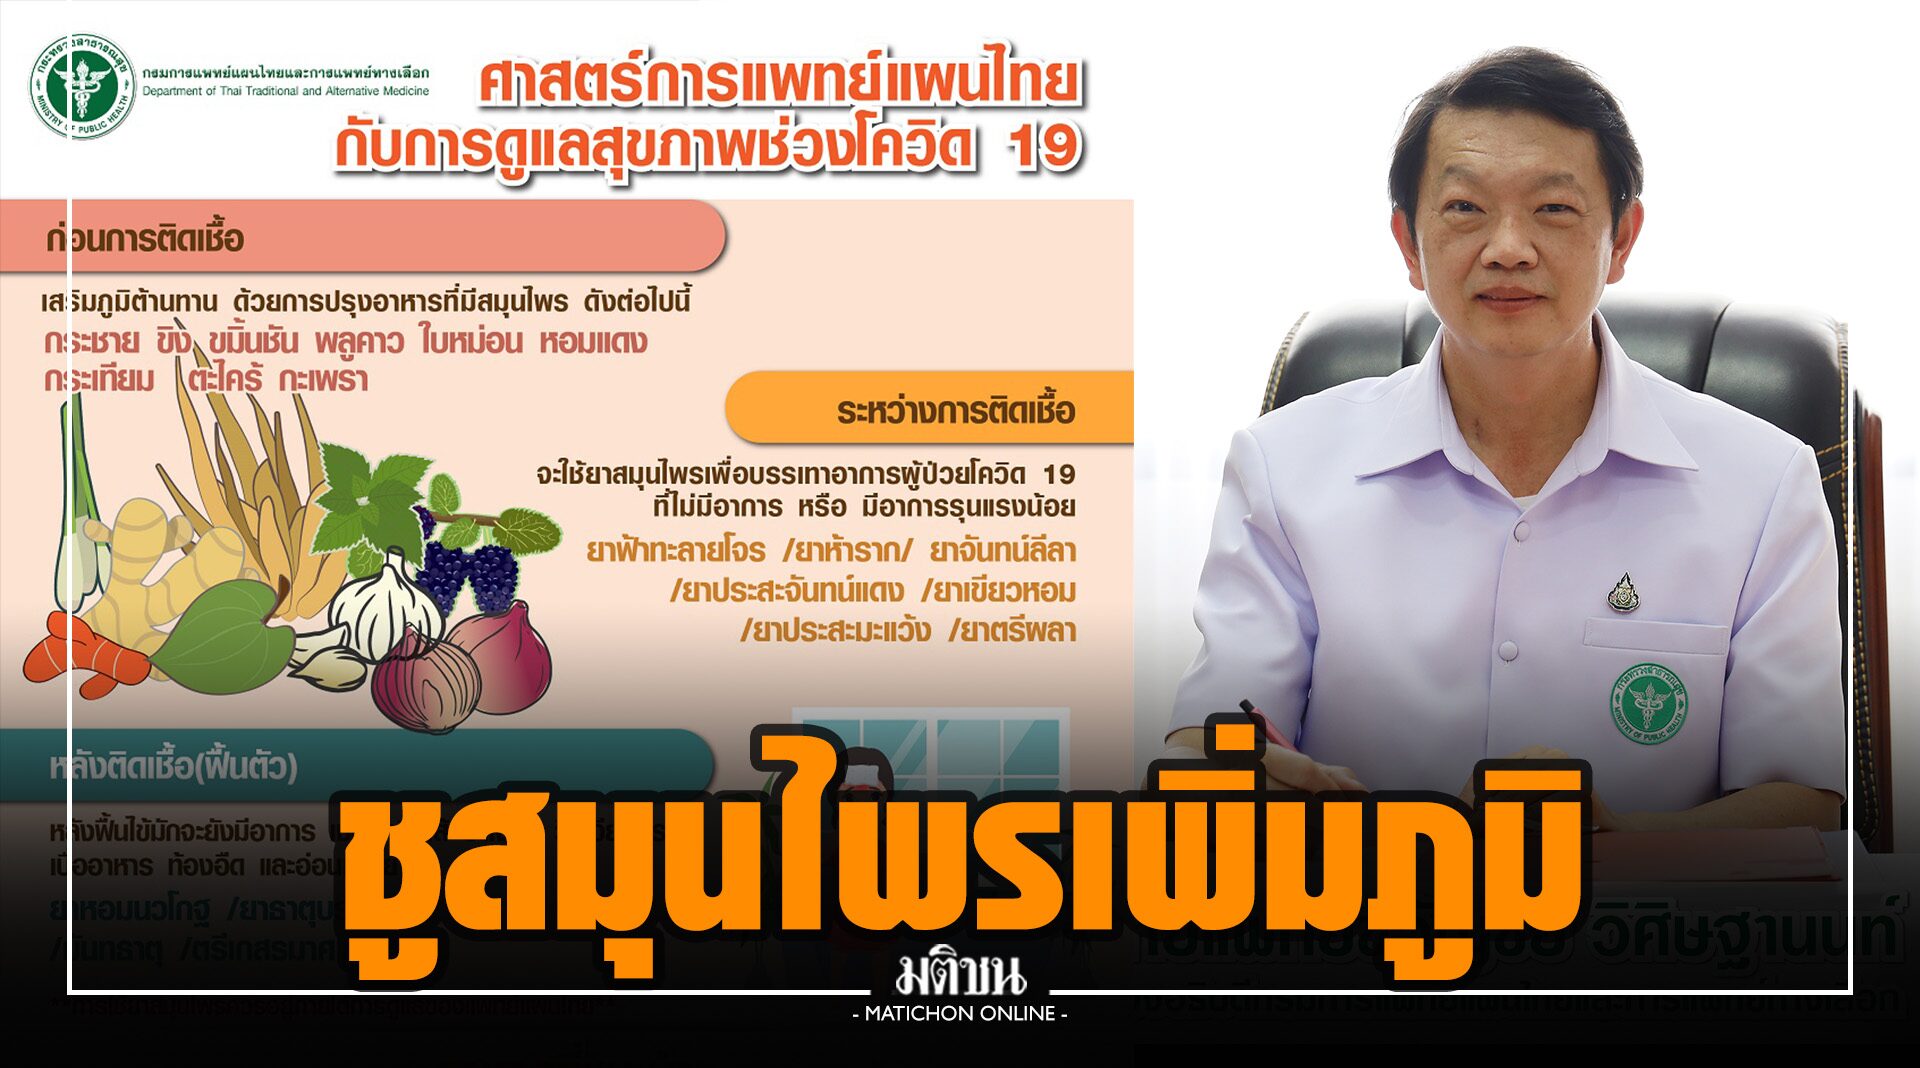 กรมการแพทย์แผนไทยฯ ชูสมุนไพรเพิ่มภูมิต้านทานโรค ช่วงโควิดระบาด